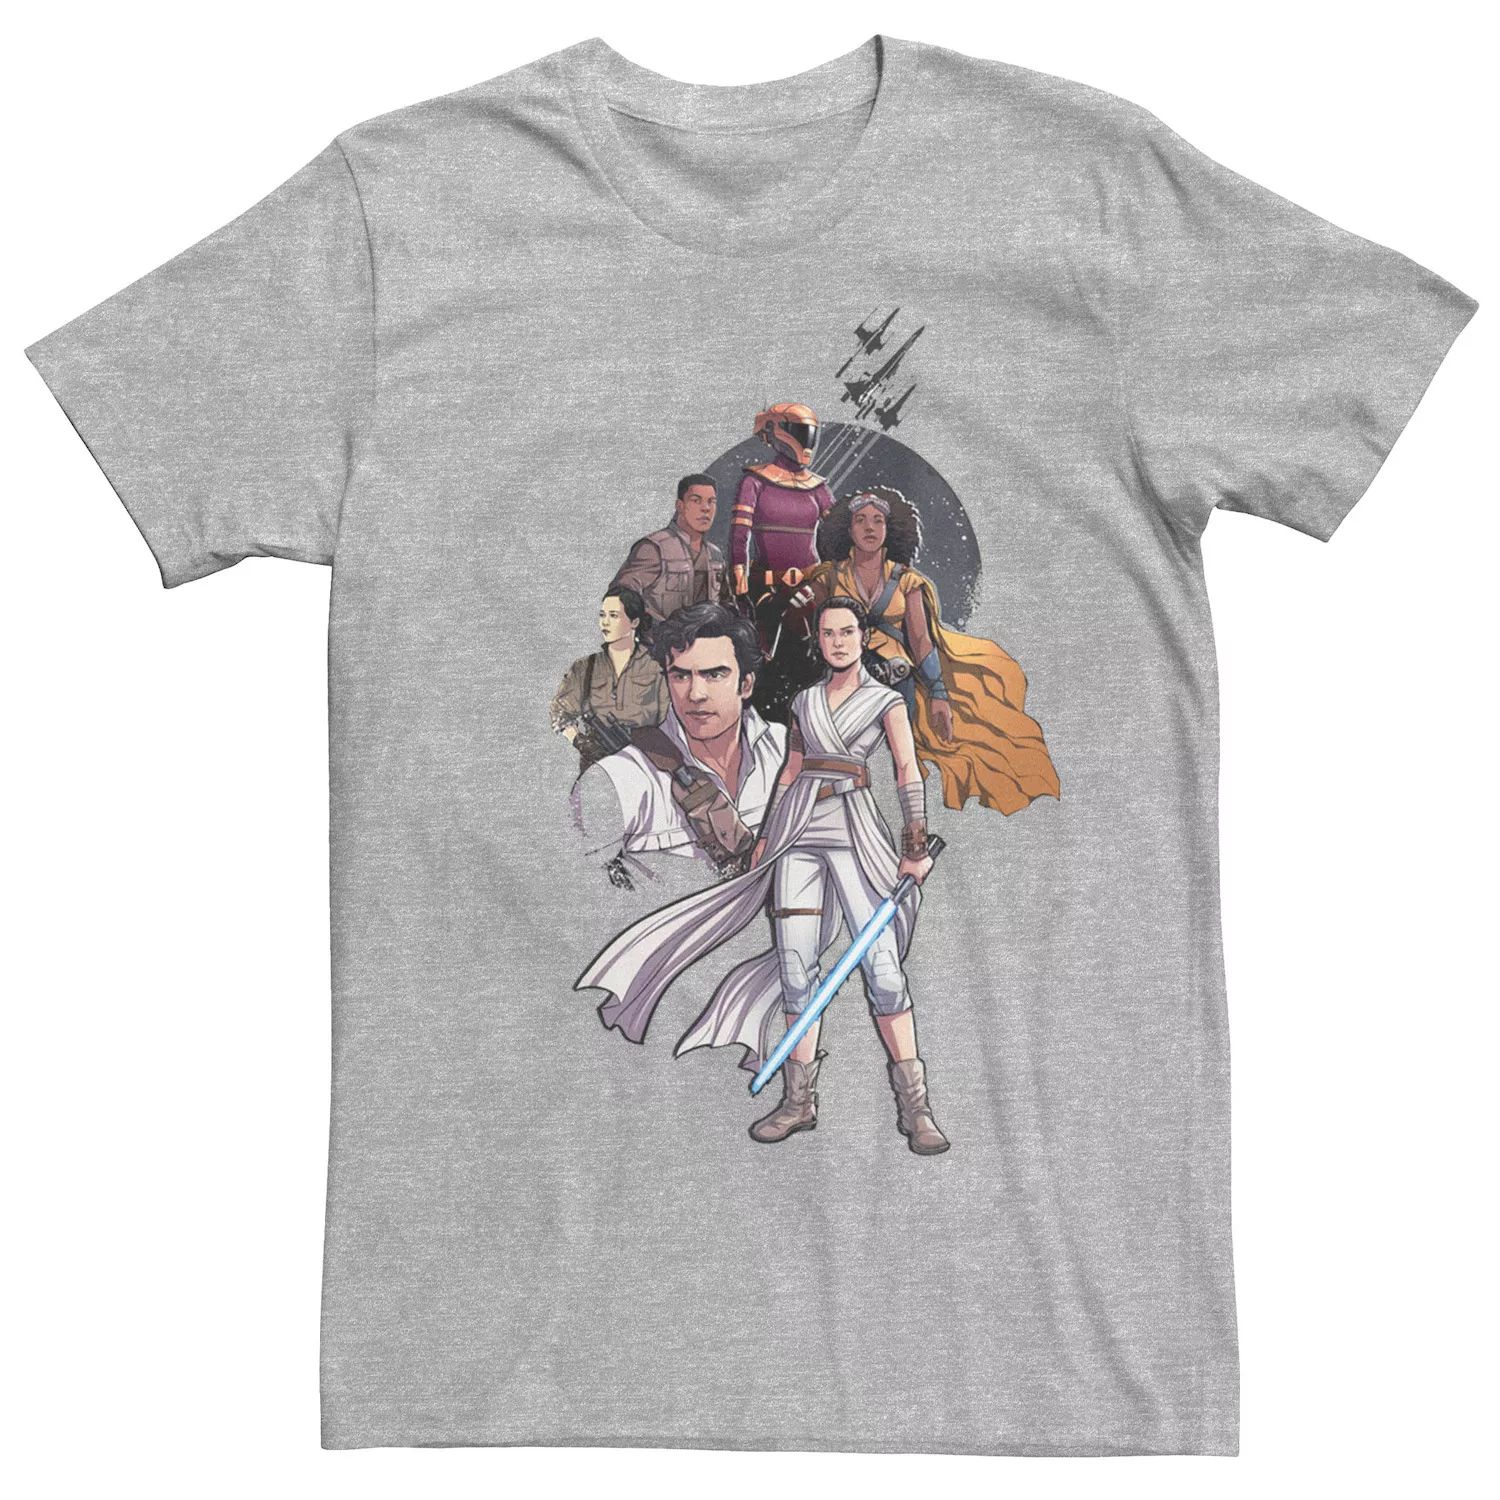 

Мужская футболка с рисунком «Звездные войны: Пробуждение силы» Licensed Character